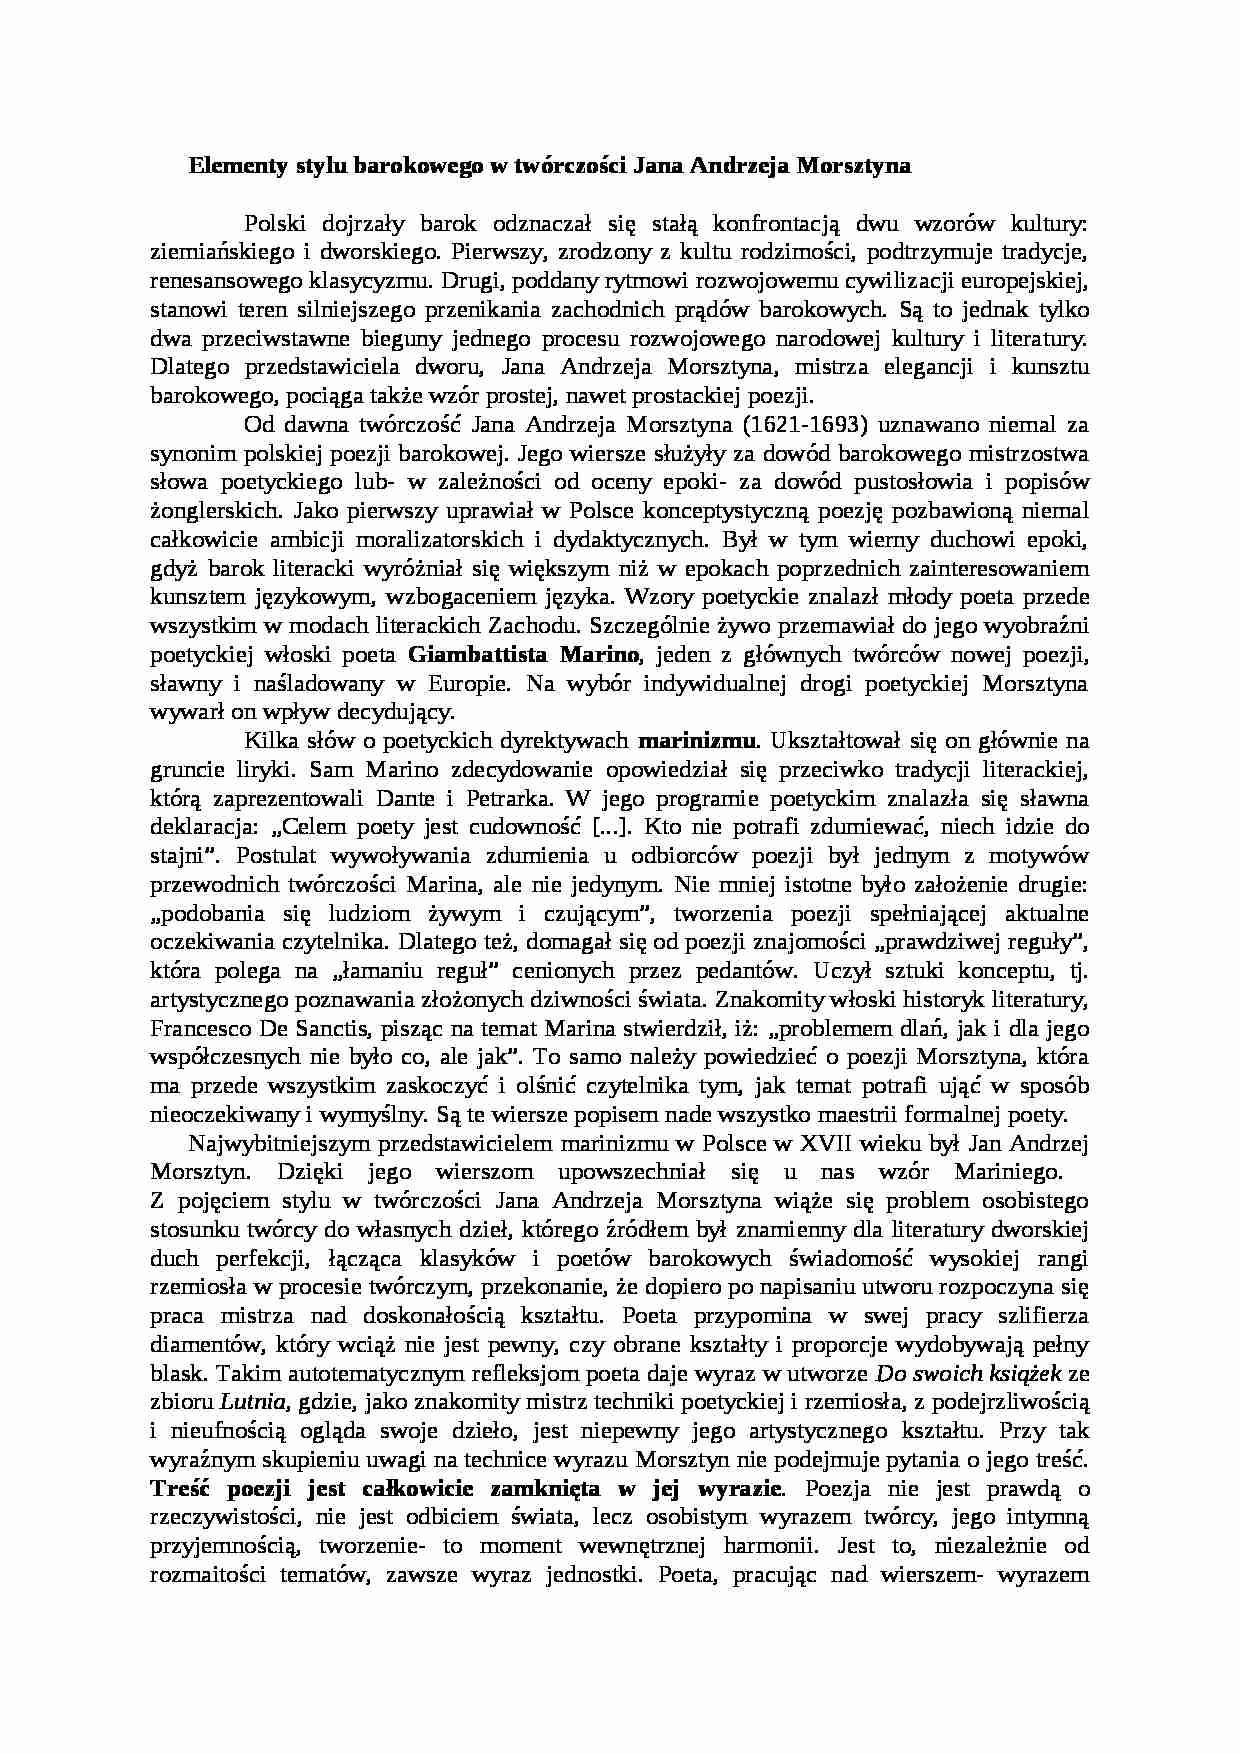 Elementy stylu barokowego w twrczości Jana Andrzeja Morsztyna - strona 1